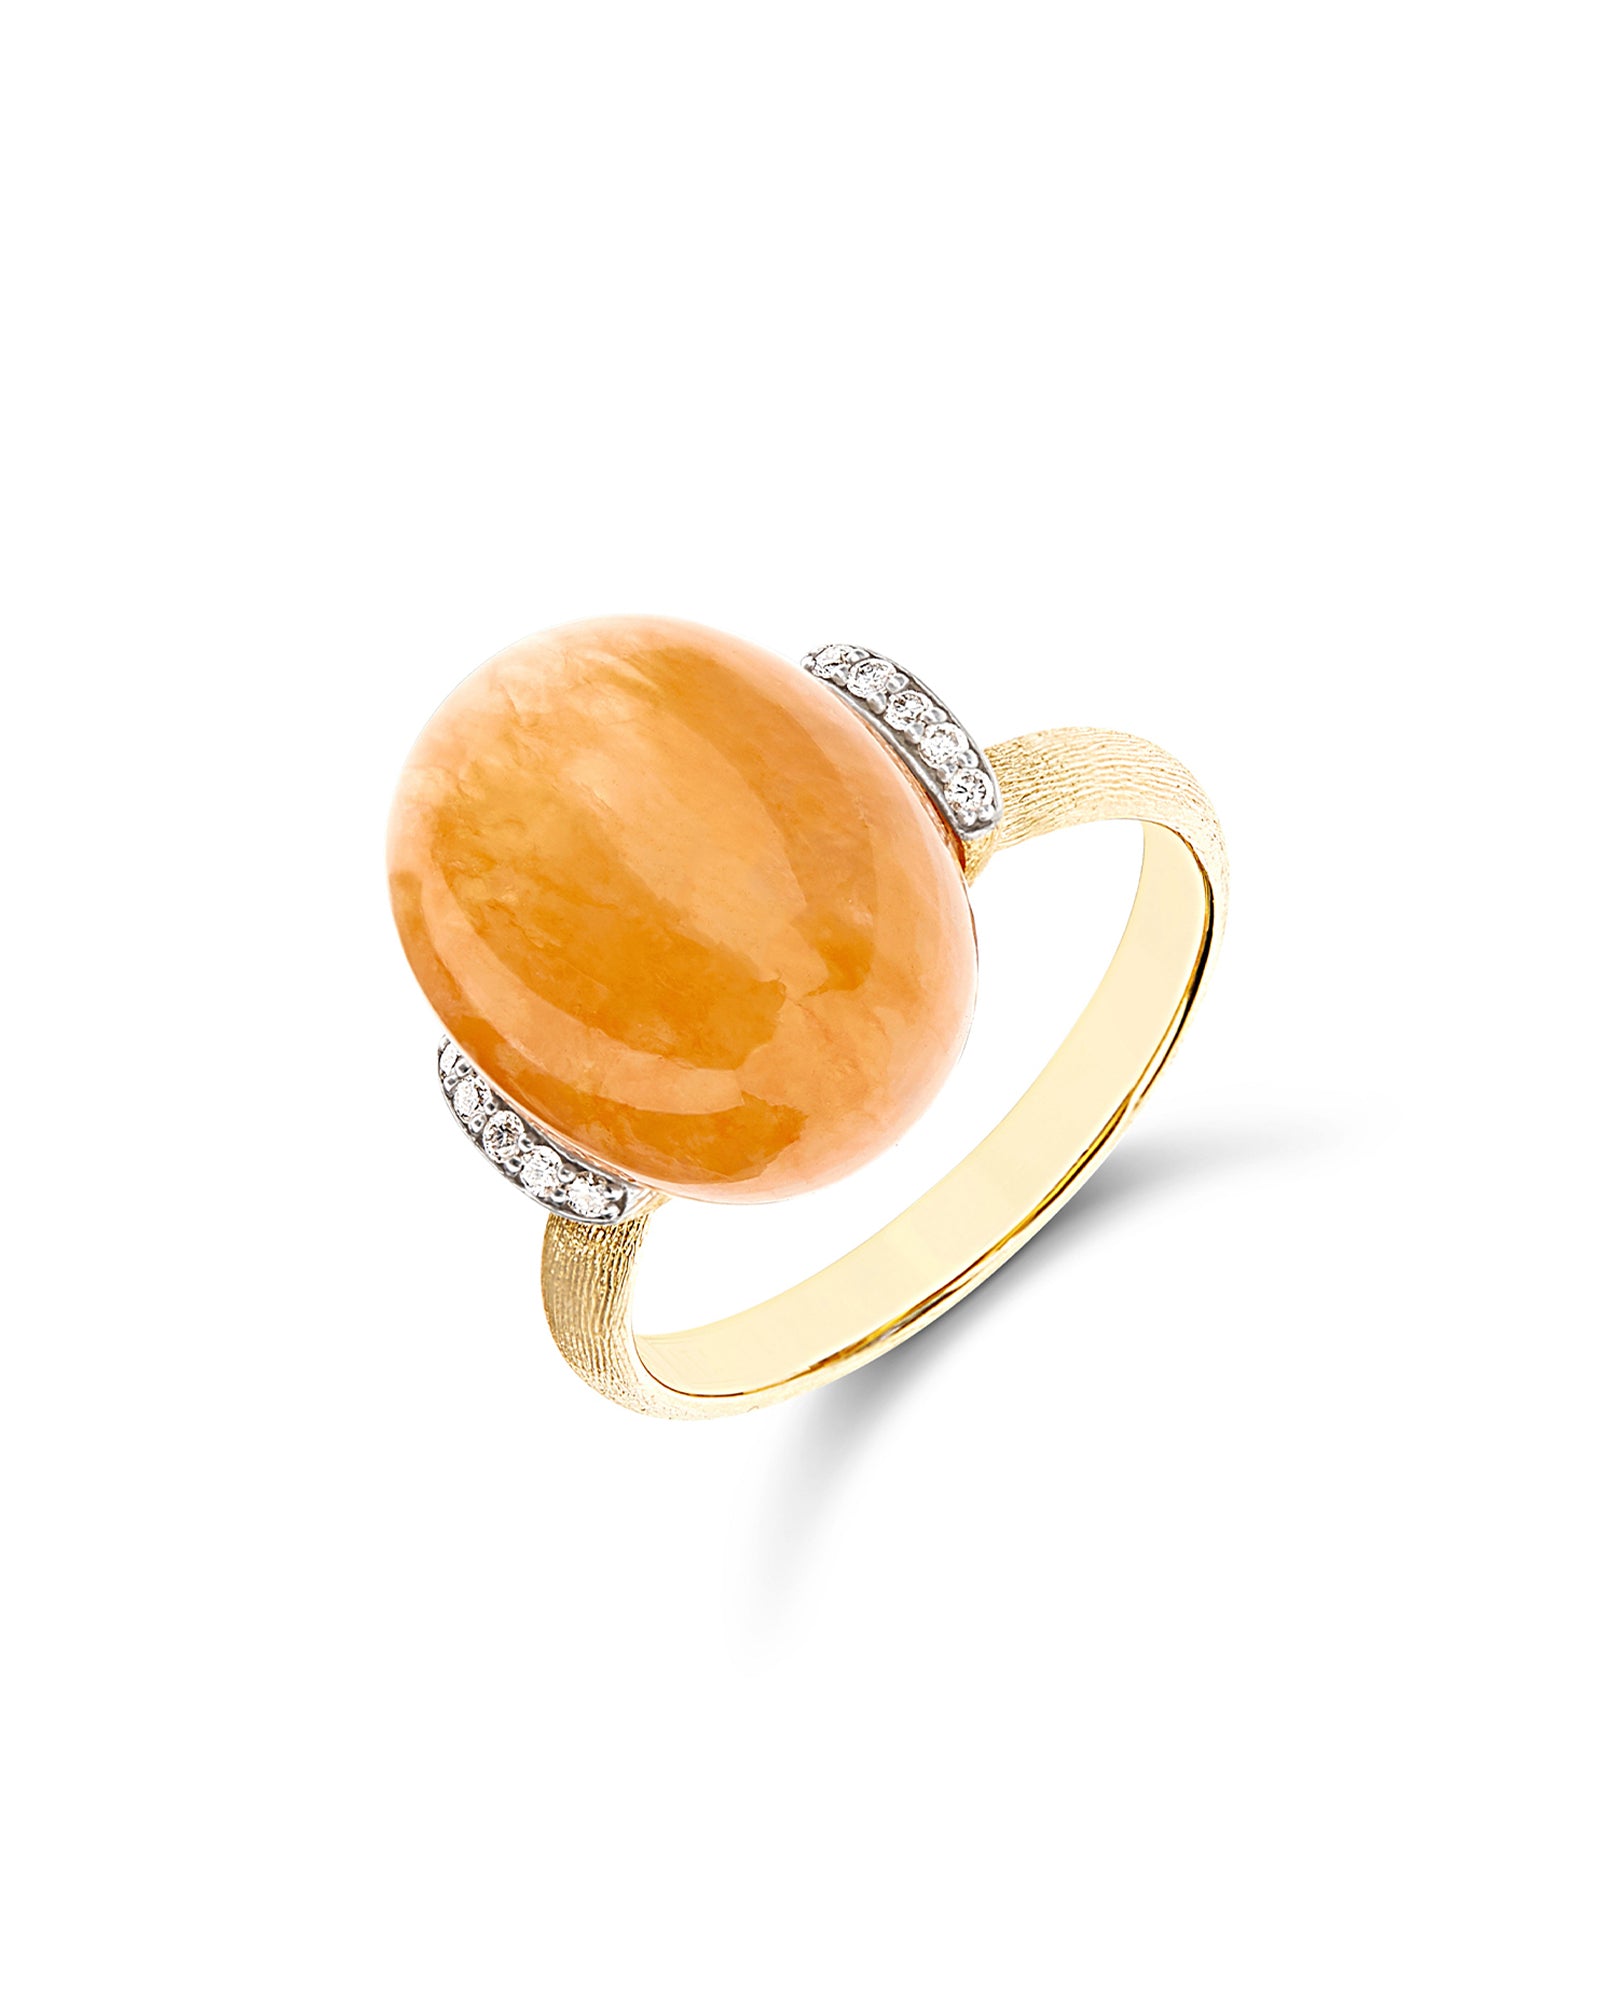 Petra "Amulets" Gold, Diamonds and Orange Aventurine Ring (LARGE)